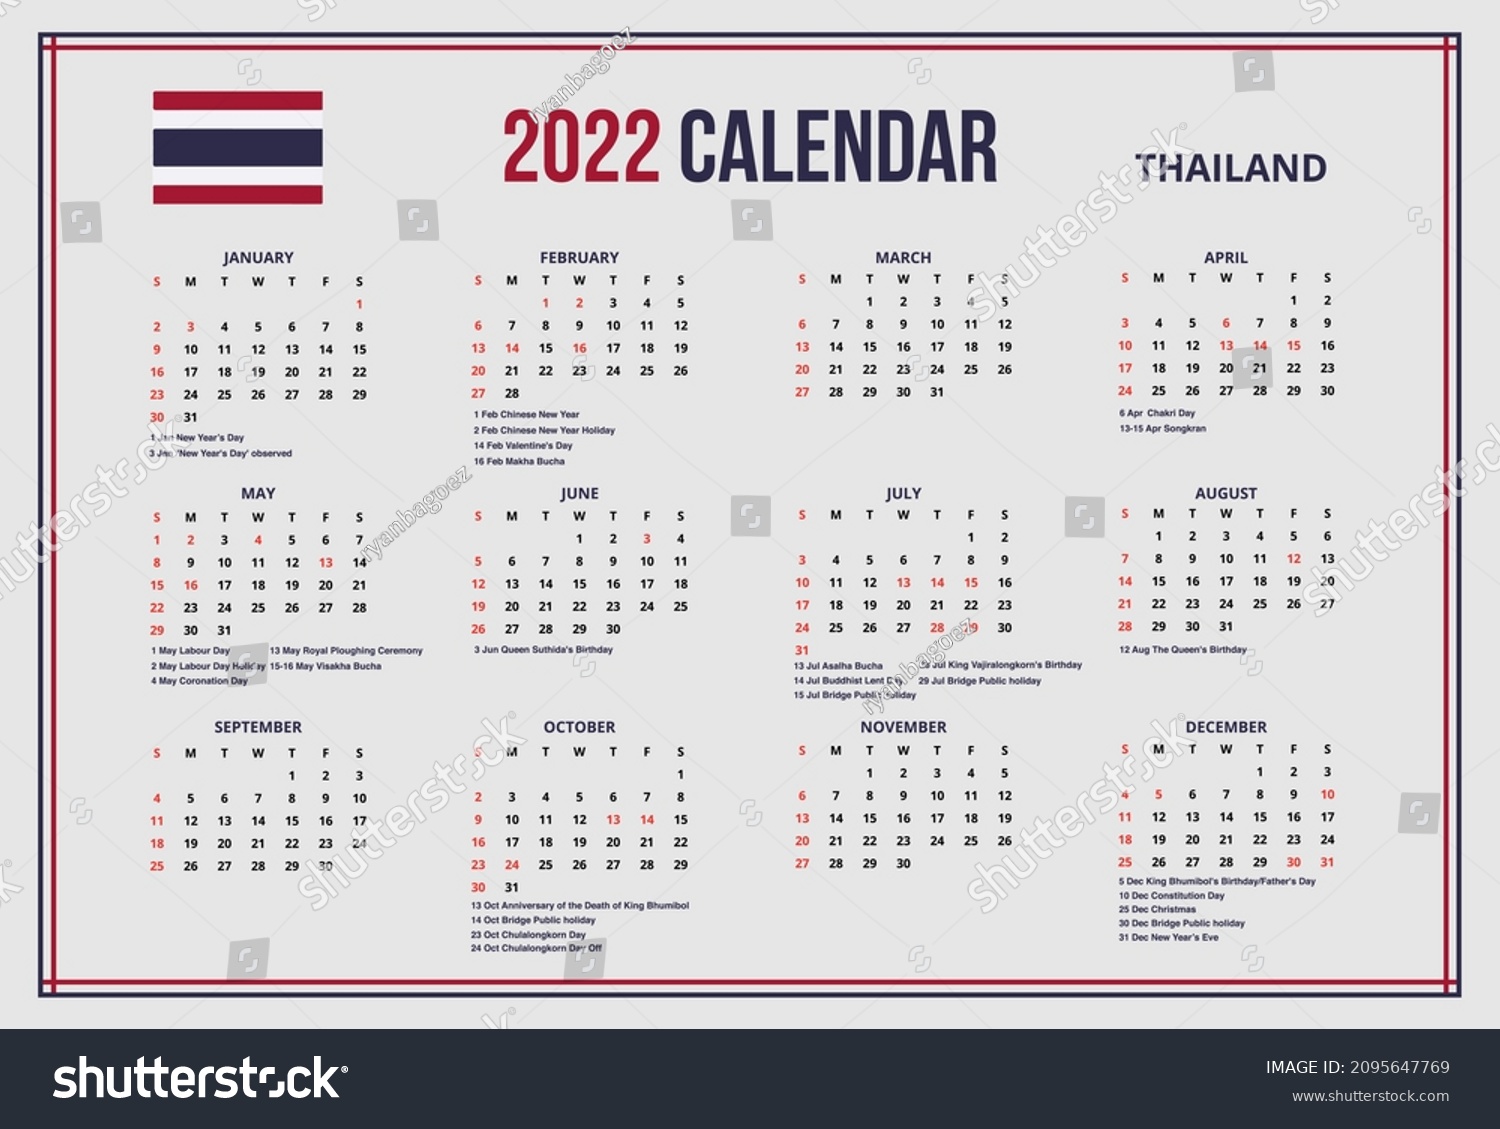 Thai Calendar 2022 2022 New Year Simple Calendar Thailand Stock Vector (Royalty Free)  2095647769